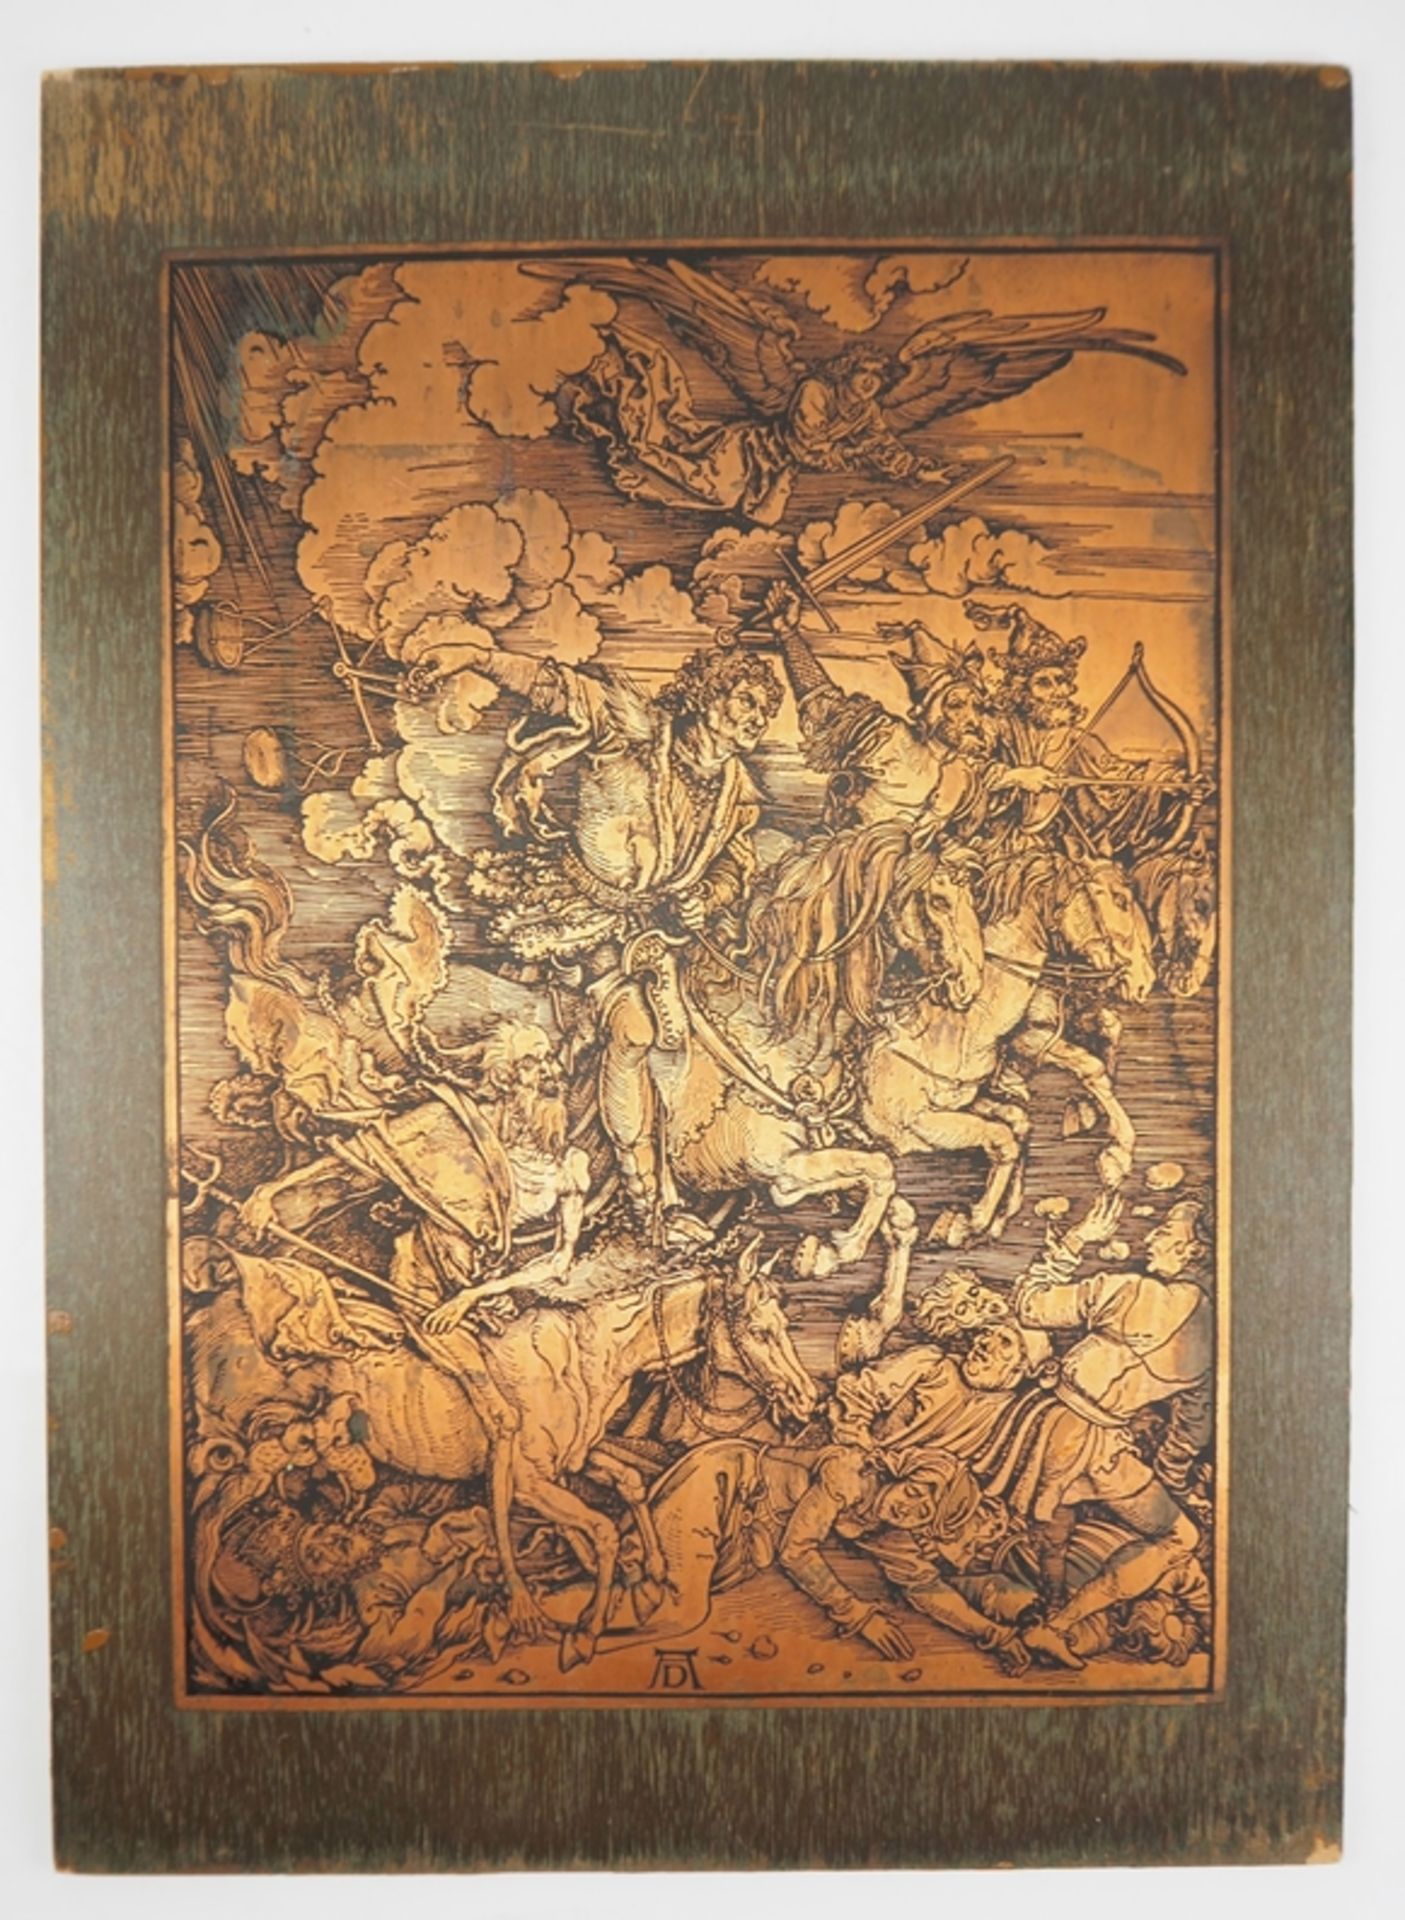 Kupferplatte 'Die Vier Apokalyptischen Reiter' nach Albrecht Dürer.